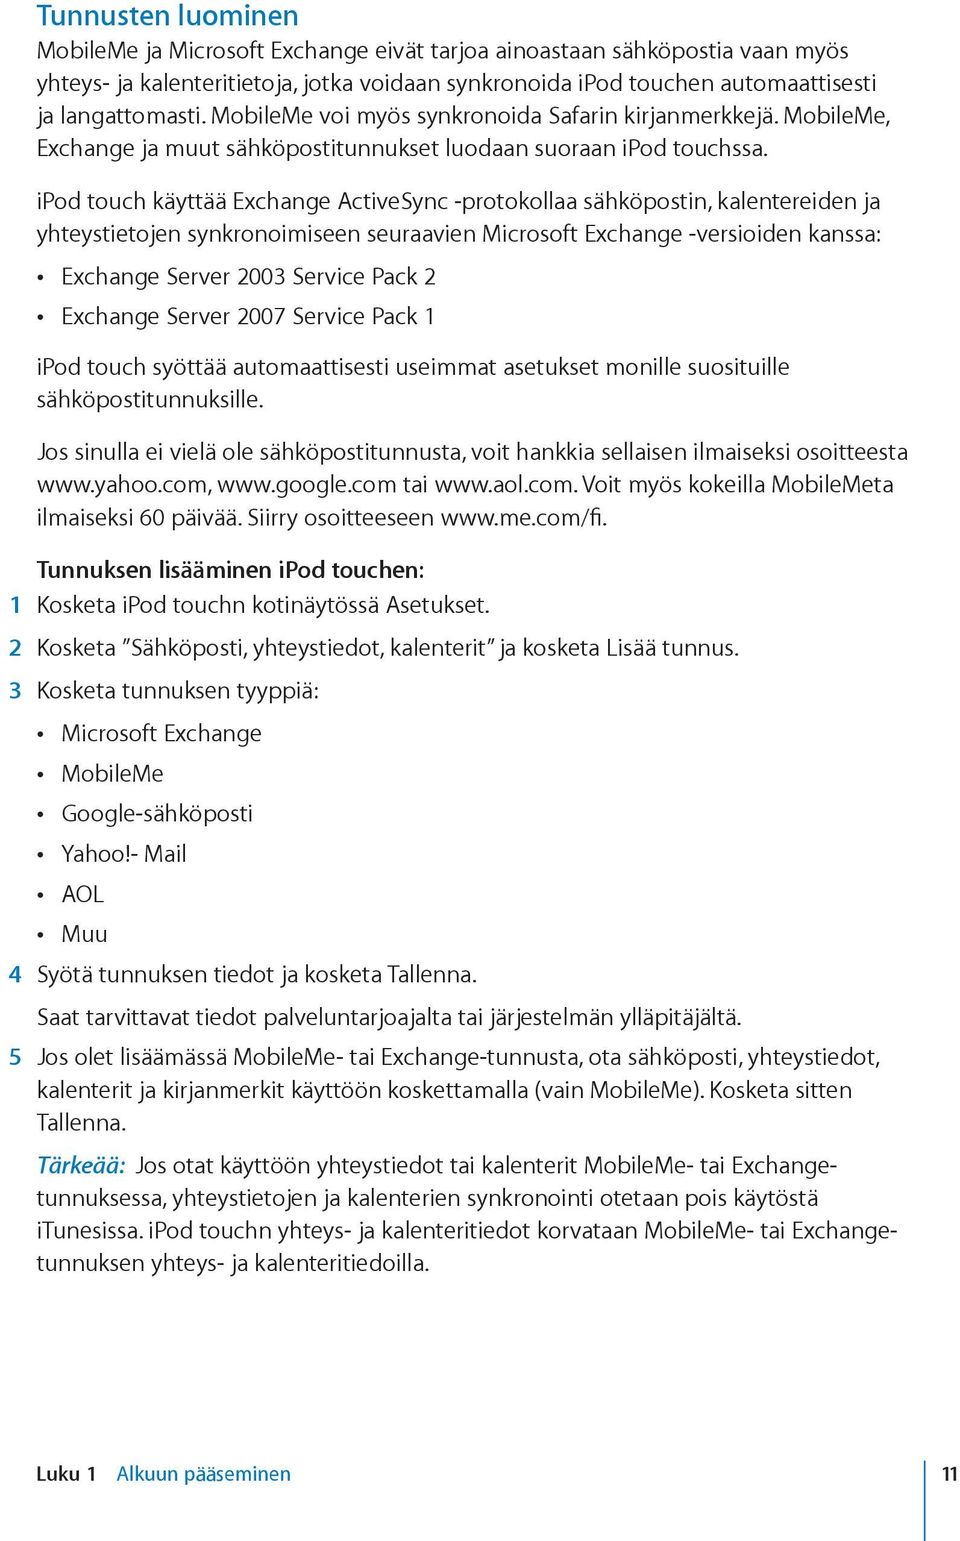 ipod touch käyttää Exchange ActiveSync -protokollaa sähköpostin, kalentereiden ja yhteystietojen synkronoimiseen seuraavien Microsoft Exchange -versioiden kanssa: Exchange Server 2003 Service Pack 2